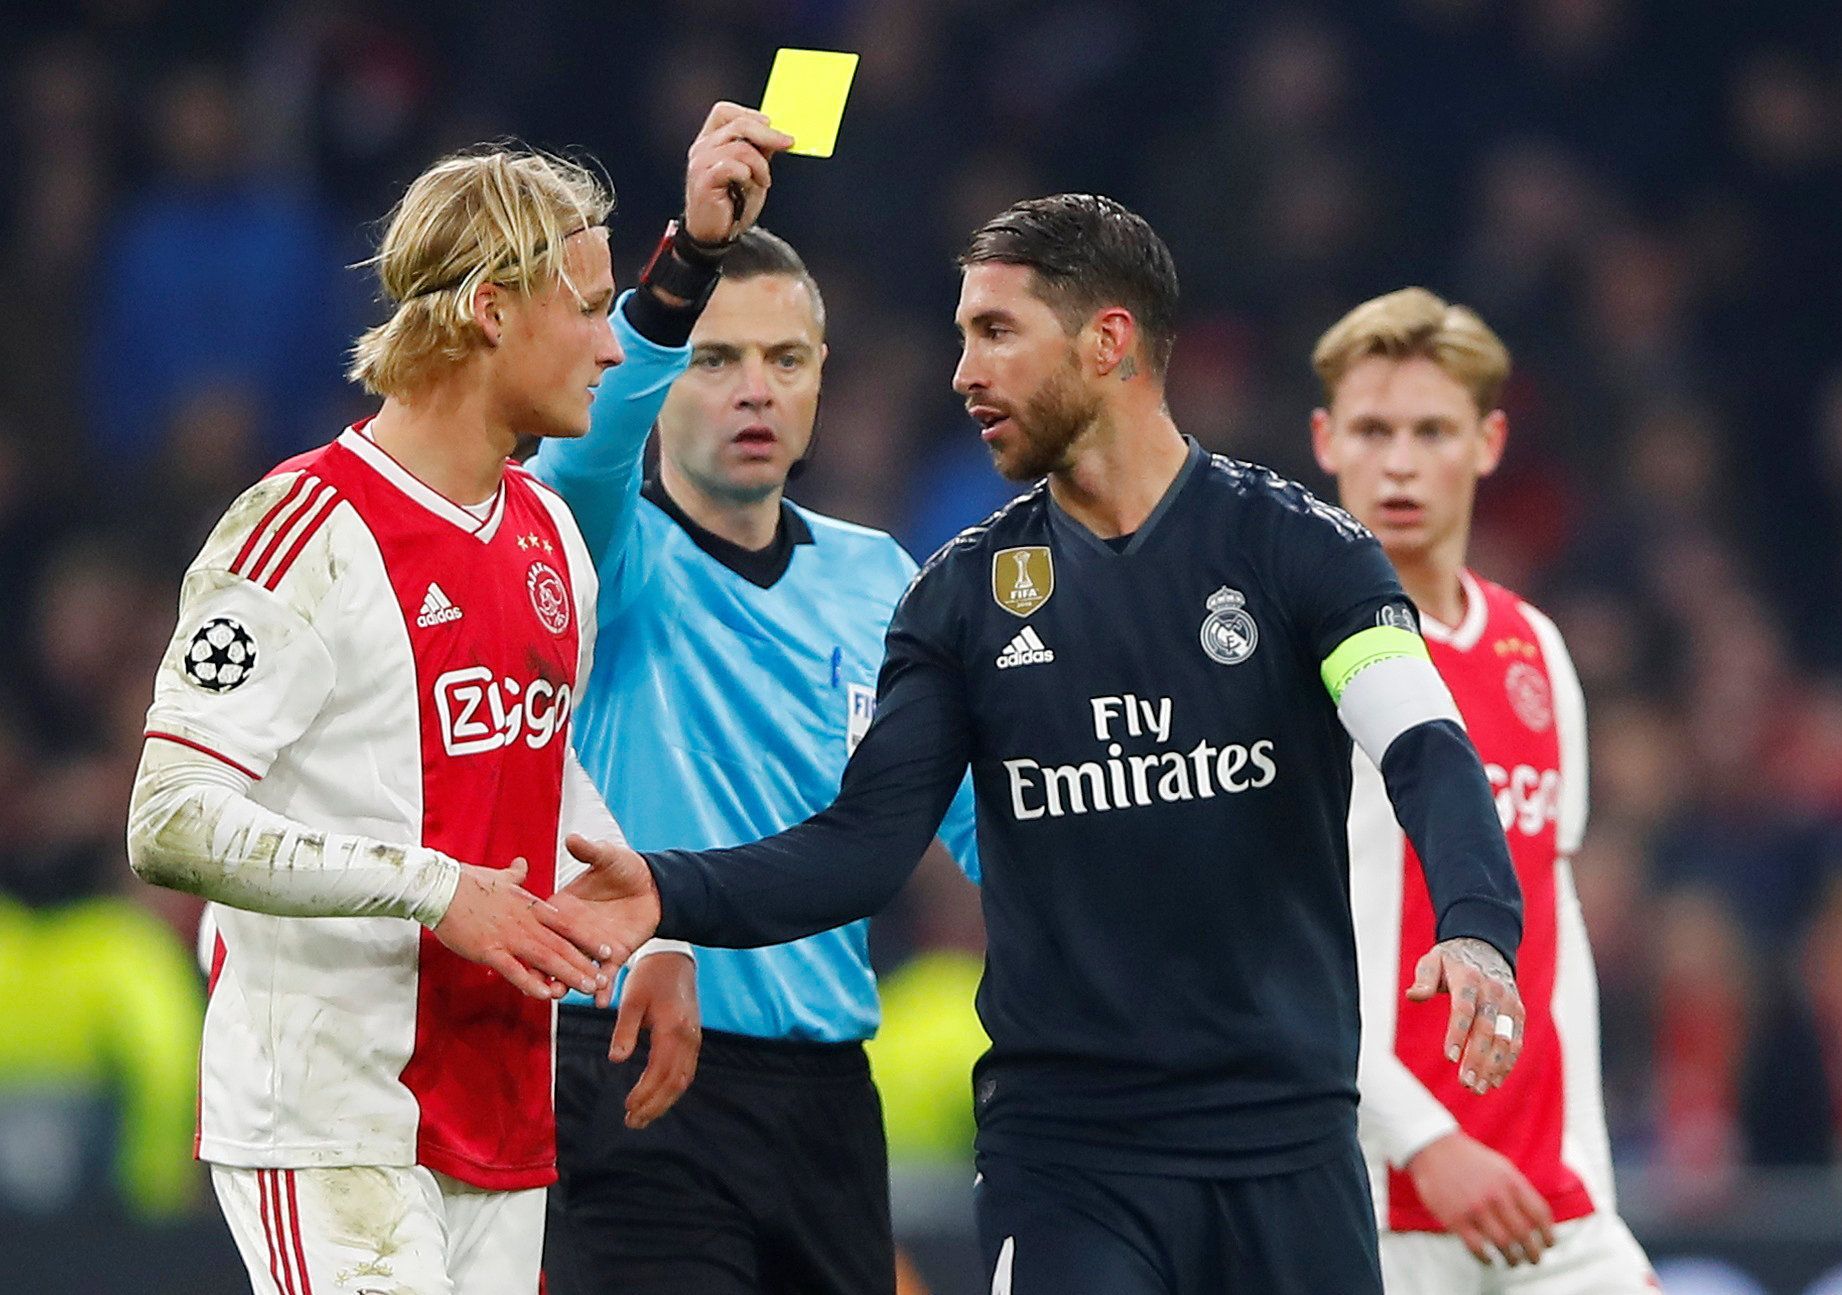 Osmifinále Ligy mistrů 2018/19, Ajax - Real Madrid: Sergio Ramos obdržel žlutou kartu.